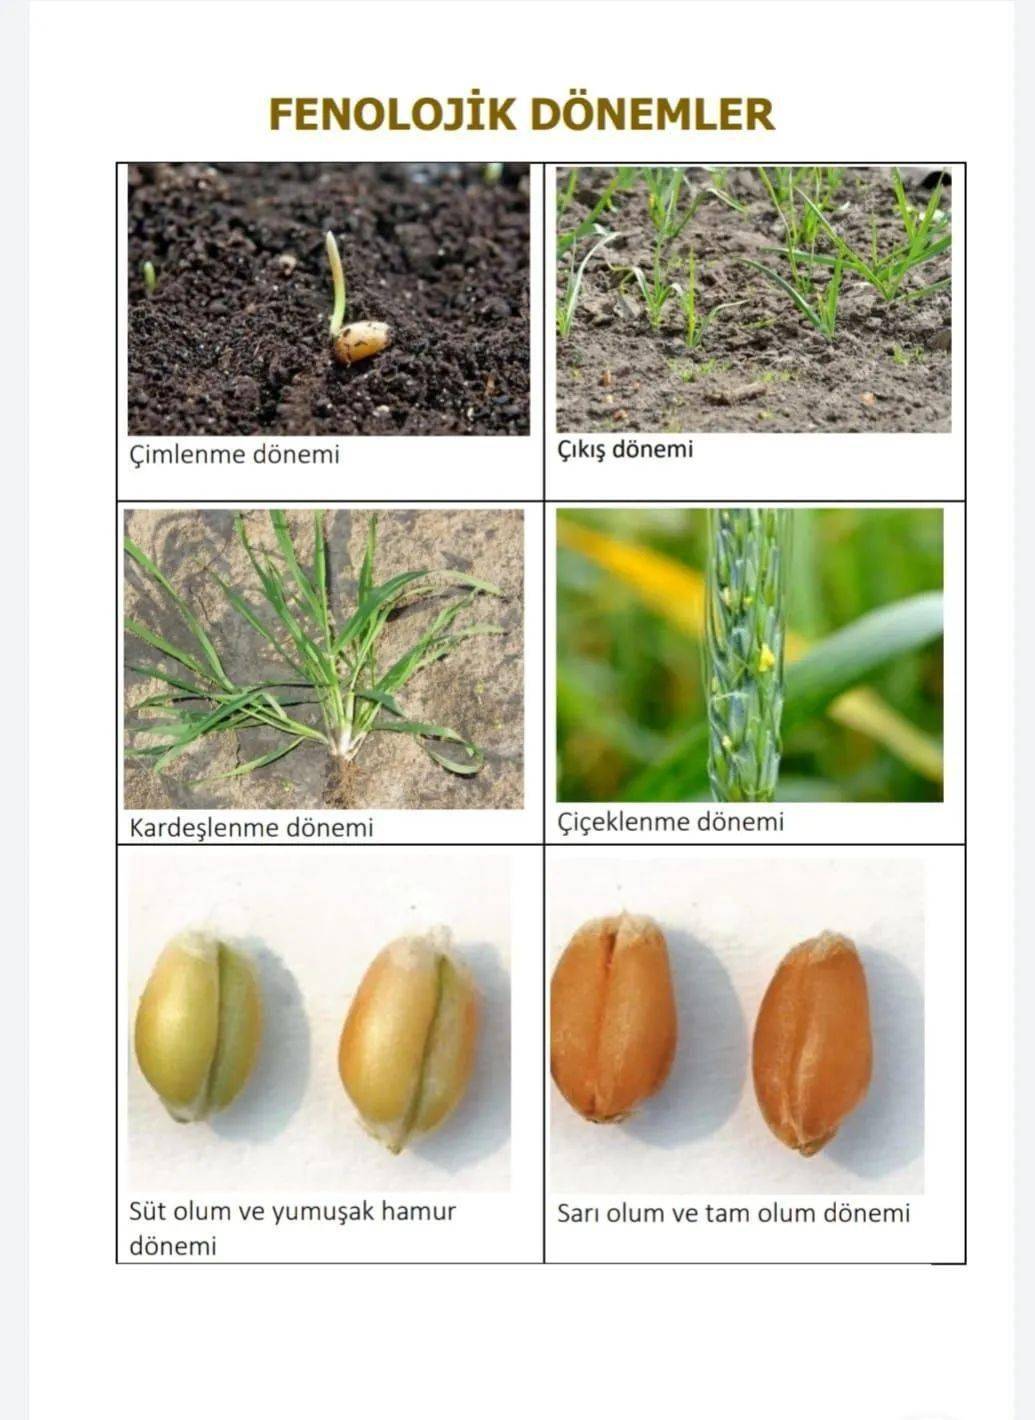 小麦幼苗形态图图片